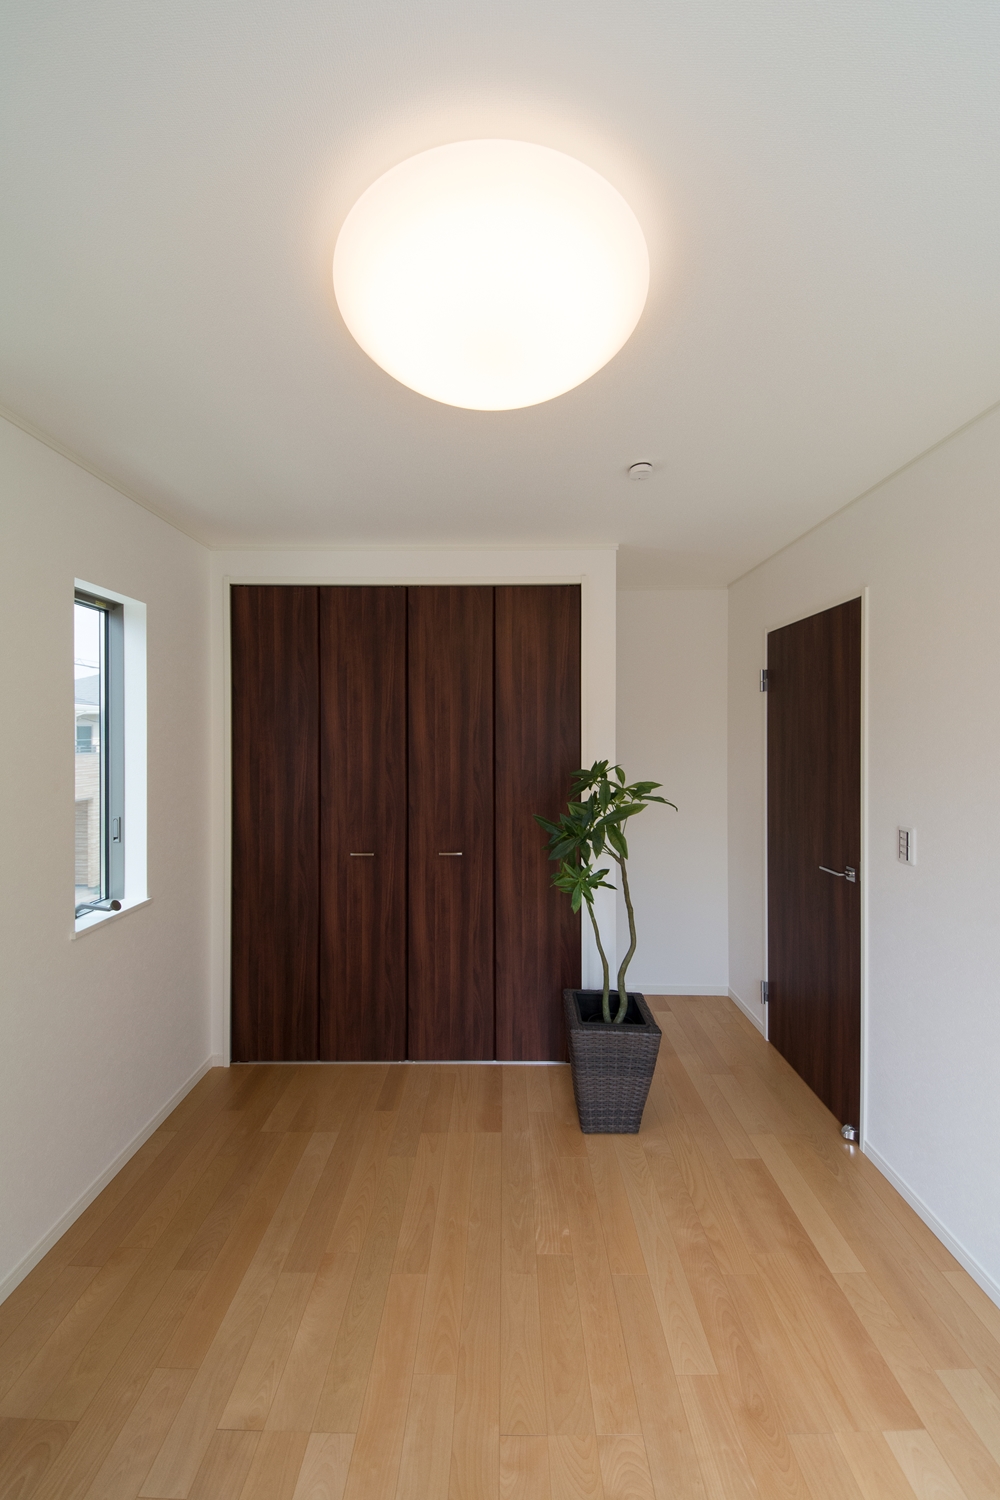 穏やかな木目のバーチを床材にダークブラウンの建具を合わせた、ナチュラルな空間の2階洋室。